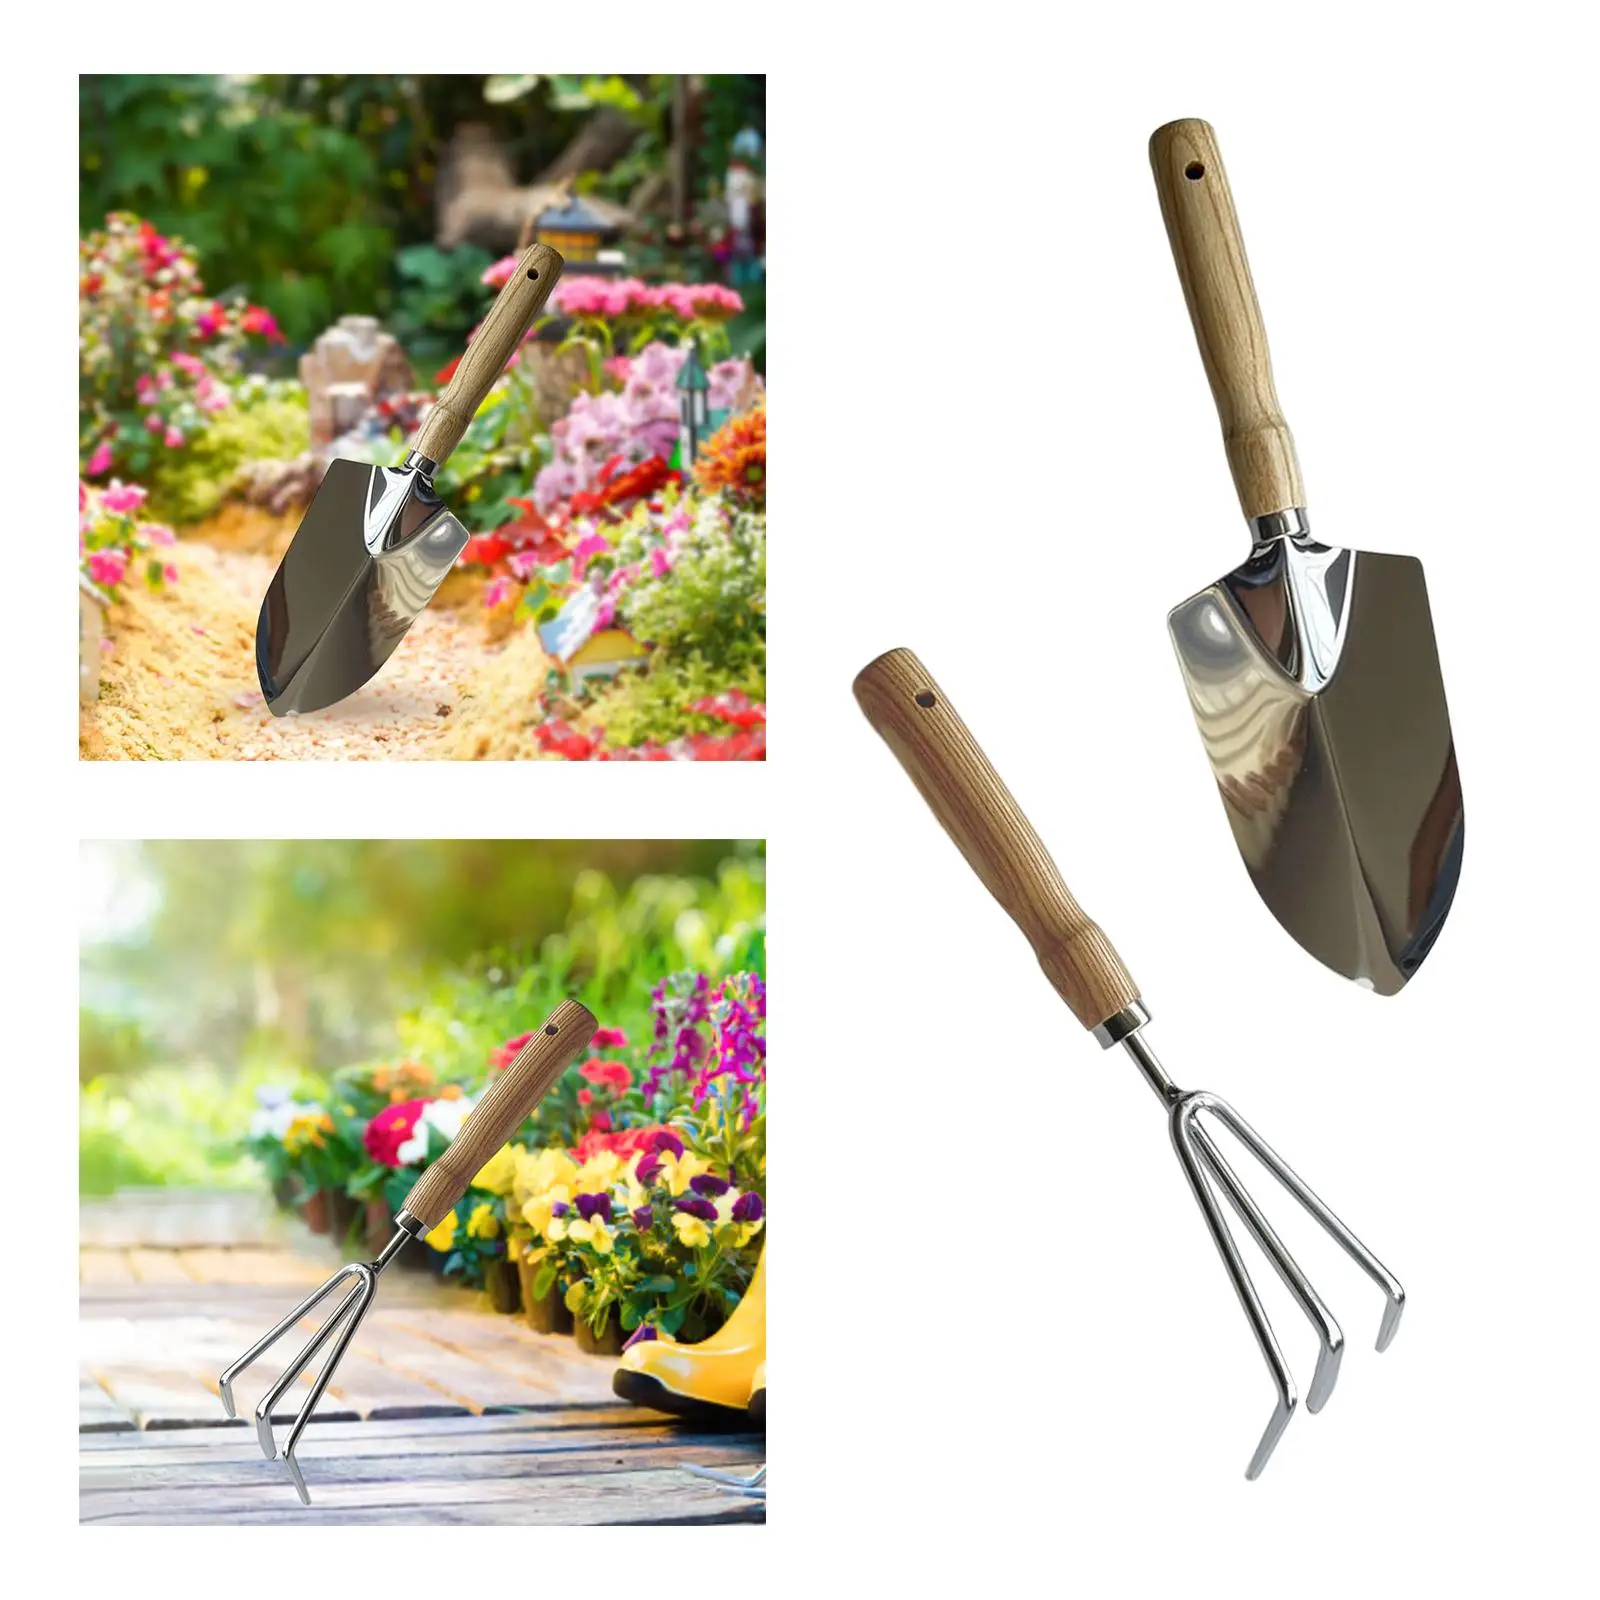 Gardening Tool Gardening Hand Tools Digging Tool for Weeding Loosening Soil